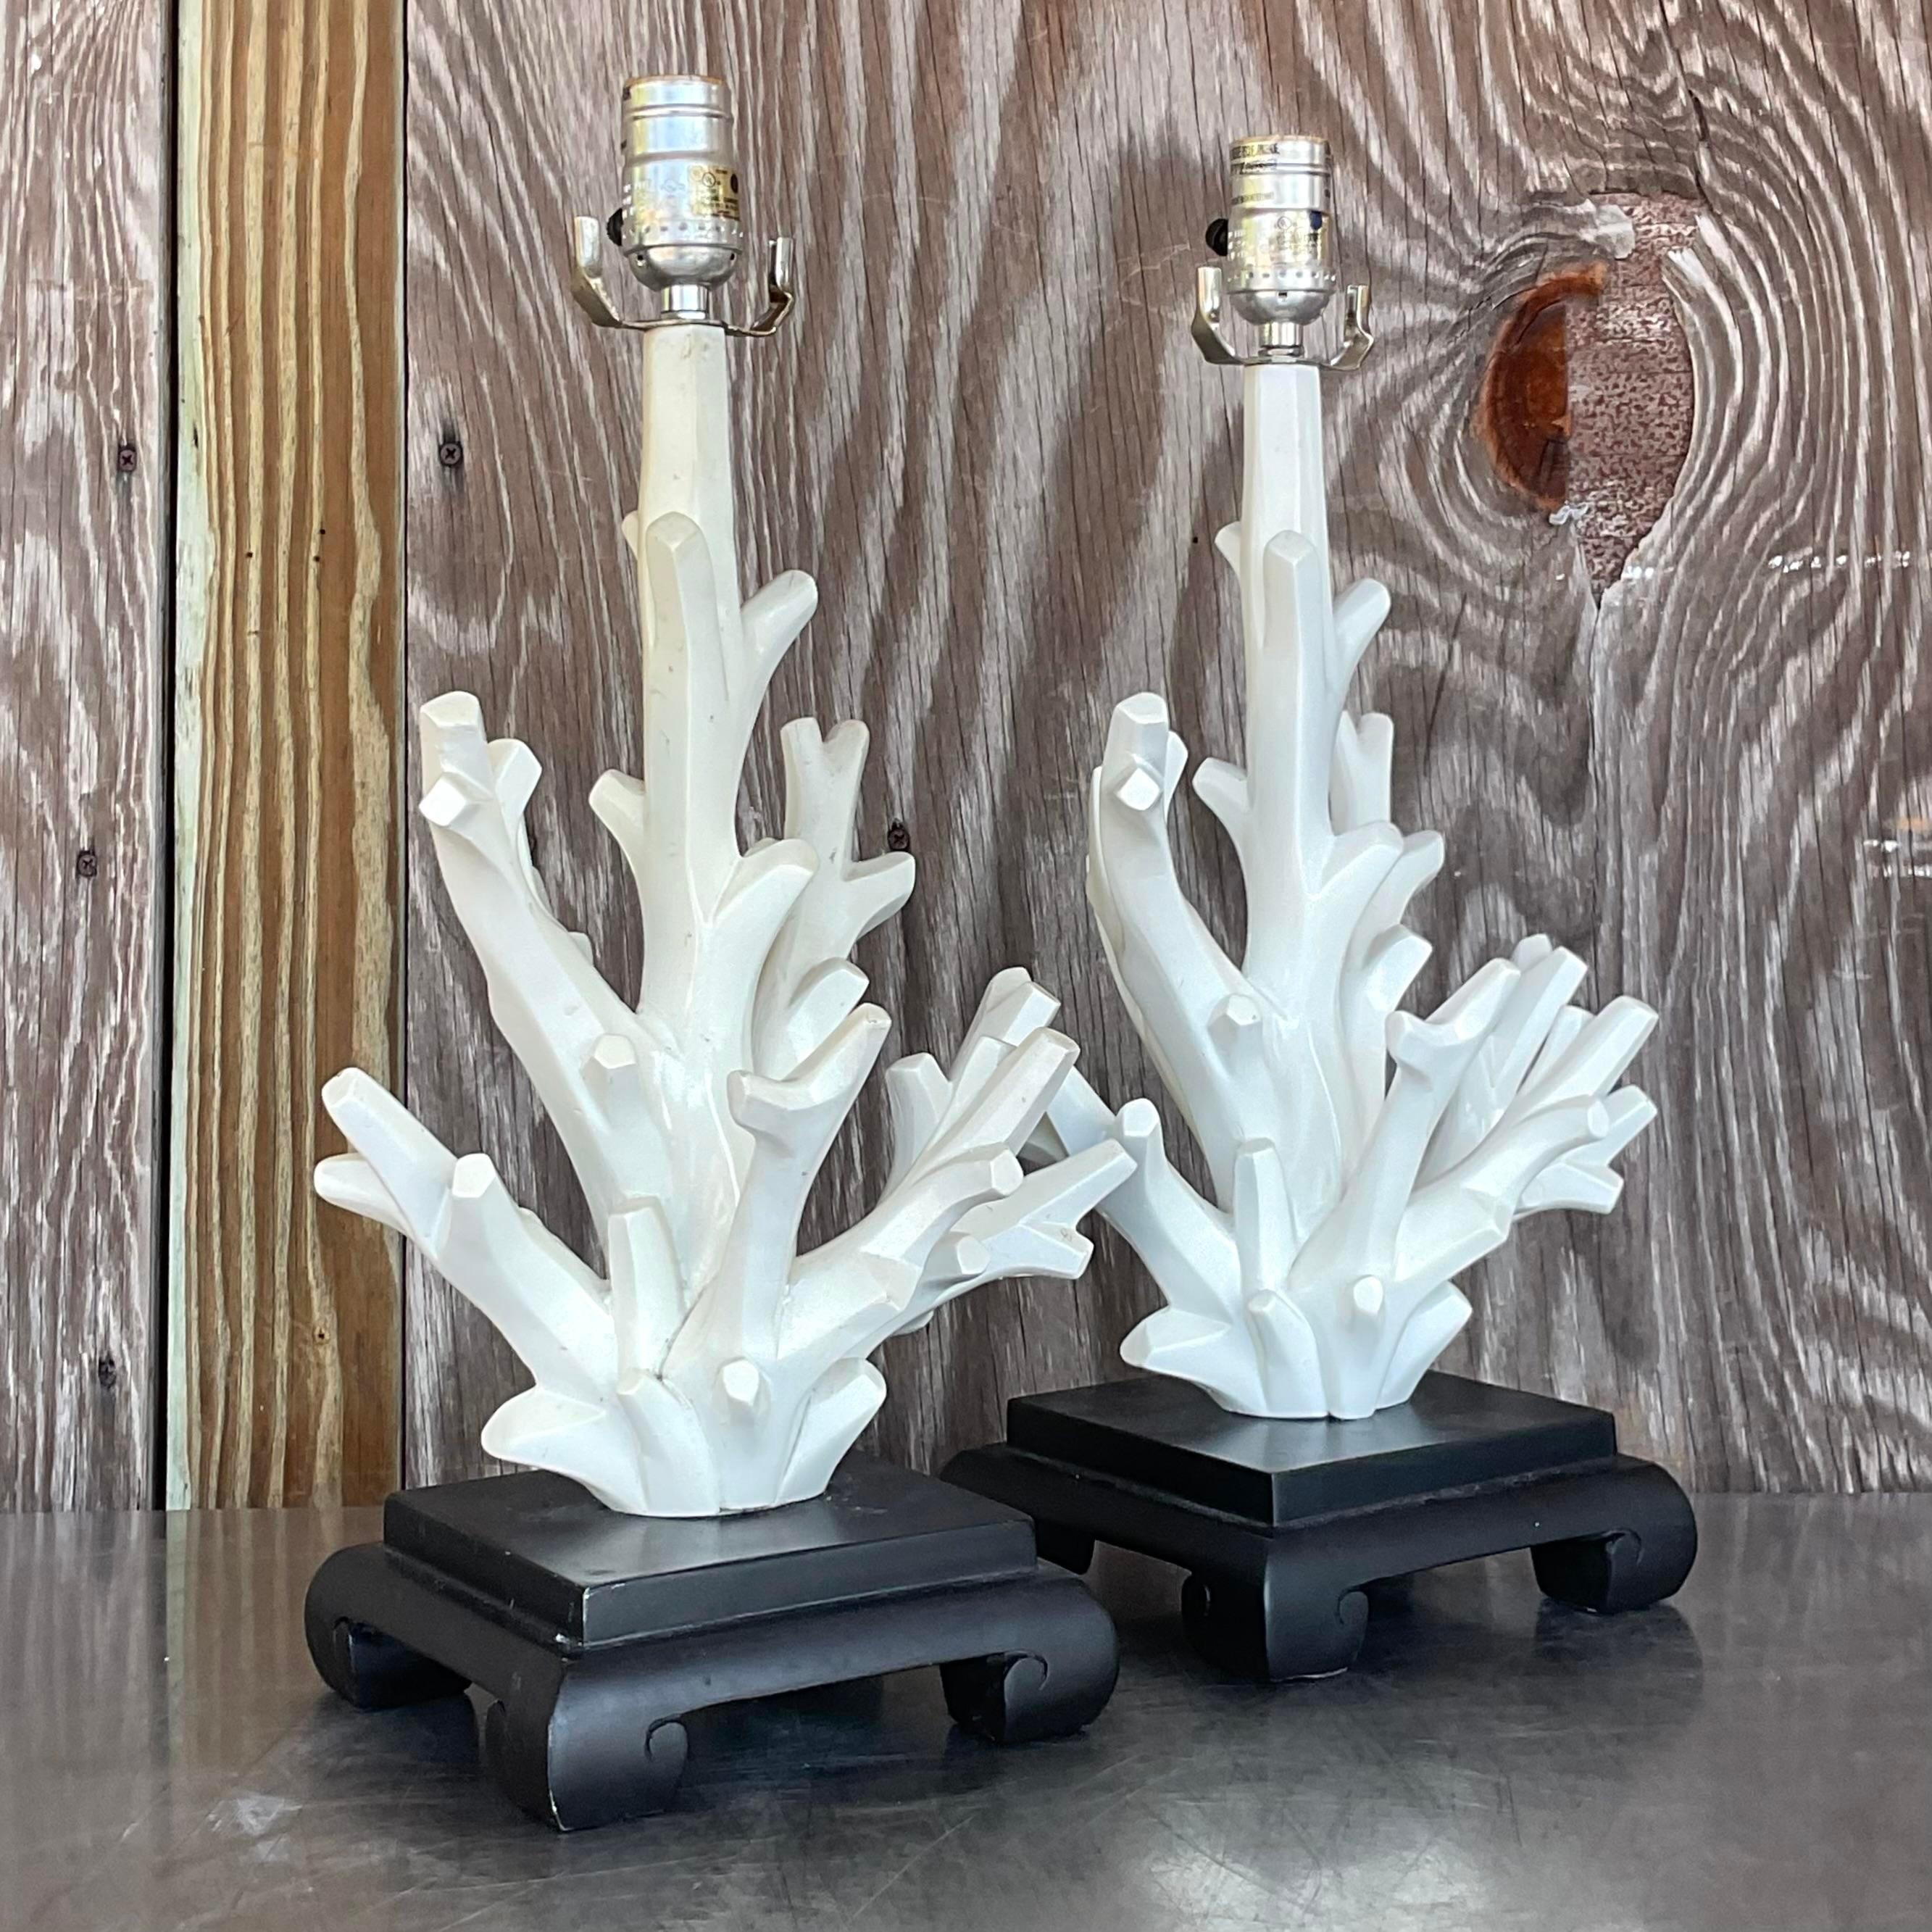 Illuminez votre espace avec une élégance côtière en utilisant nos lampes Vintage Coastal Coral Branch Wood Lamps - A Pair. Ces lampes magnifiquement fabriquées présentent des motifs de branches de corail naturel sur des bases en bois rustique,